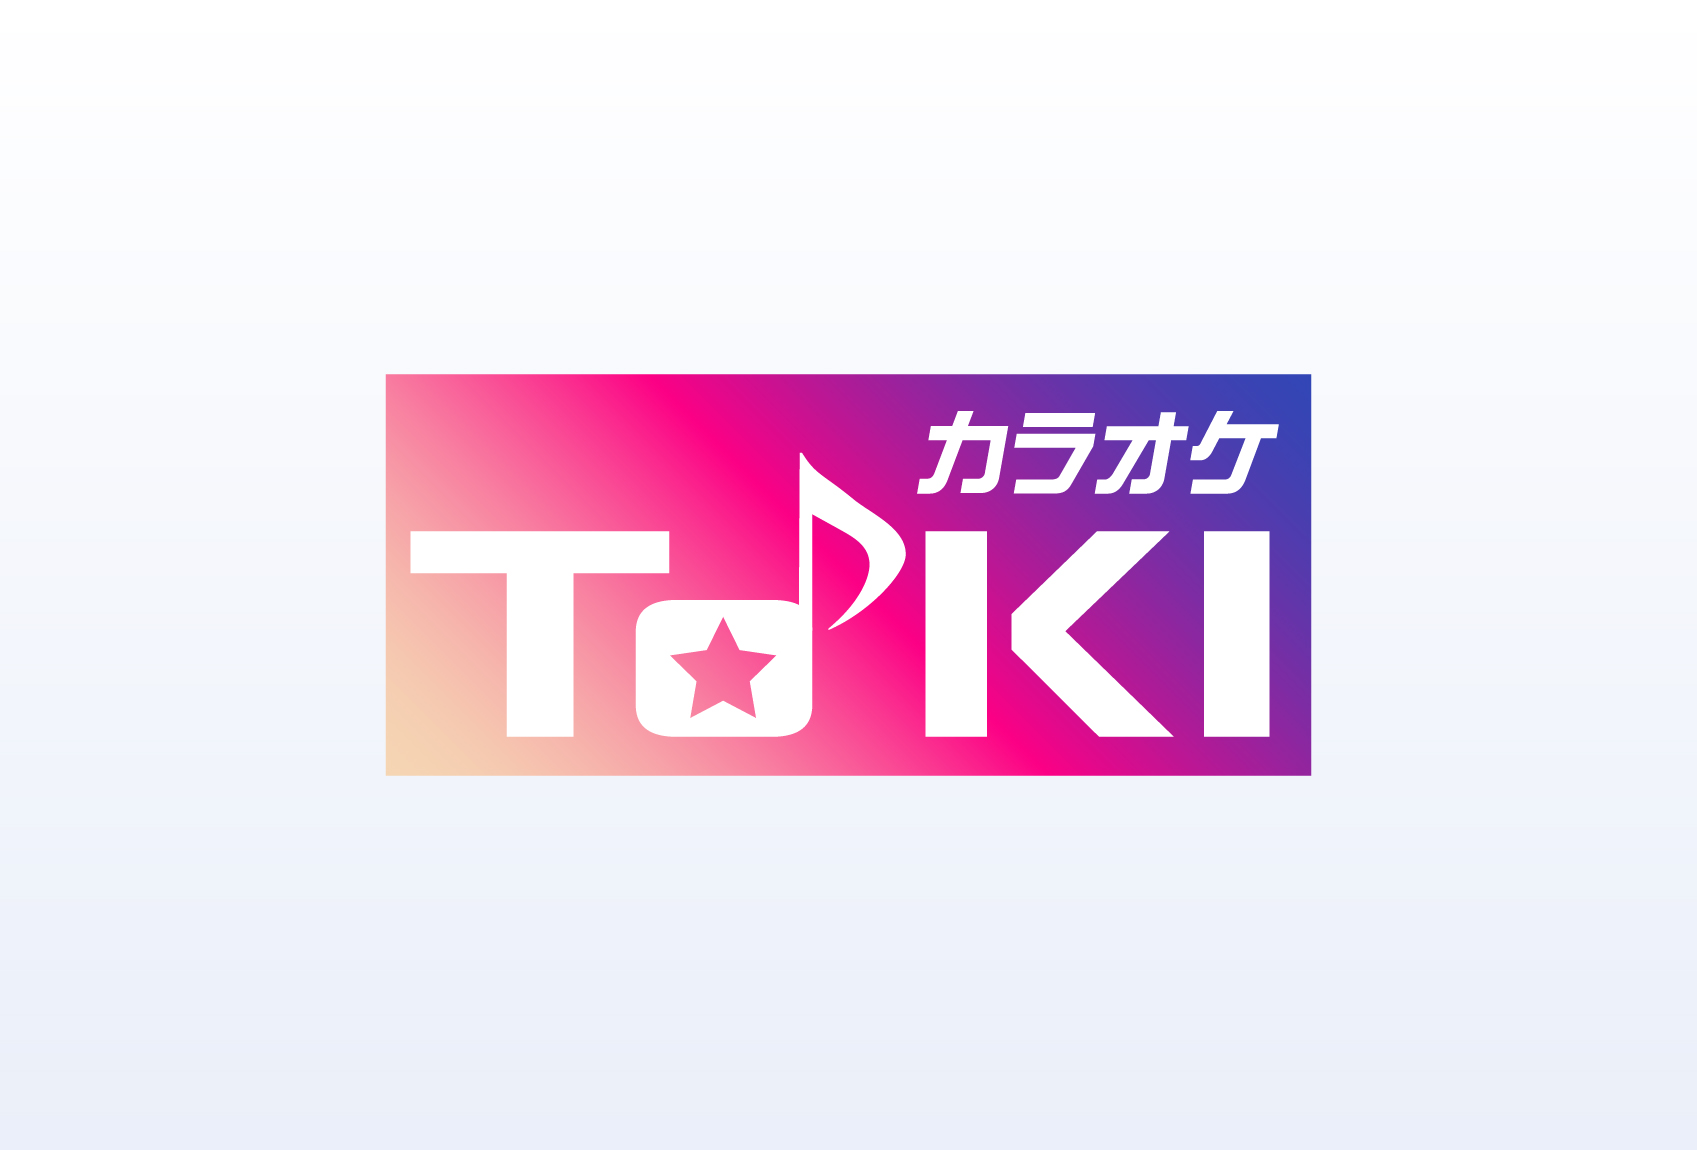 「カラオケTOKI」様ロゴデザイン制作 トレンドを反映したグラデーションロゴデザイン実績